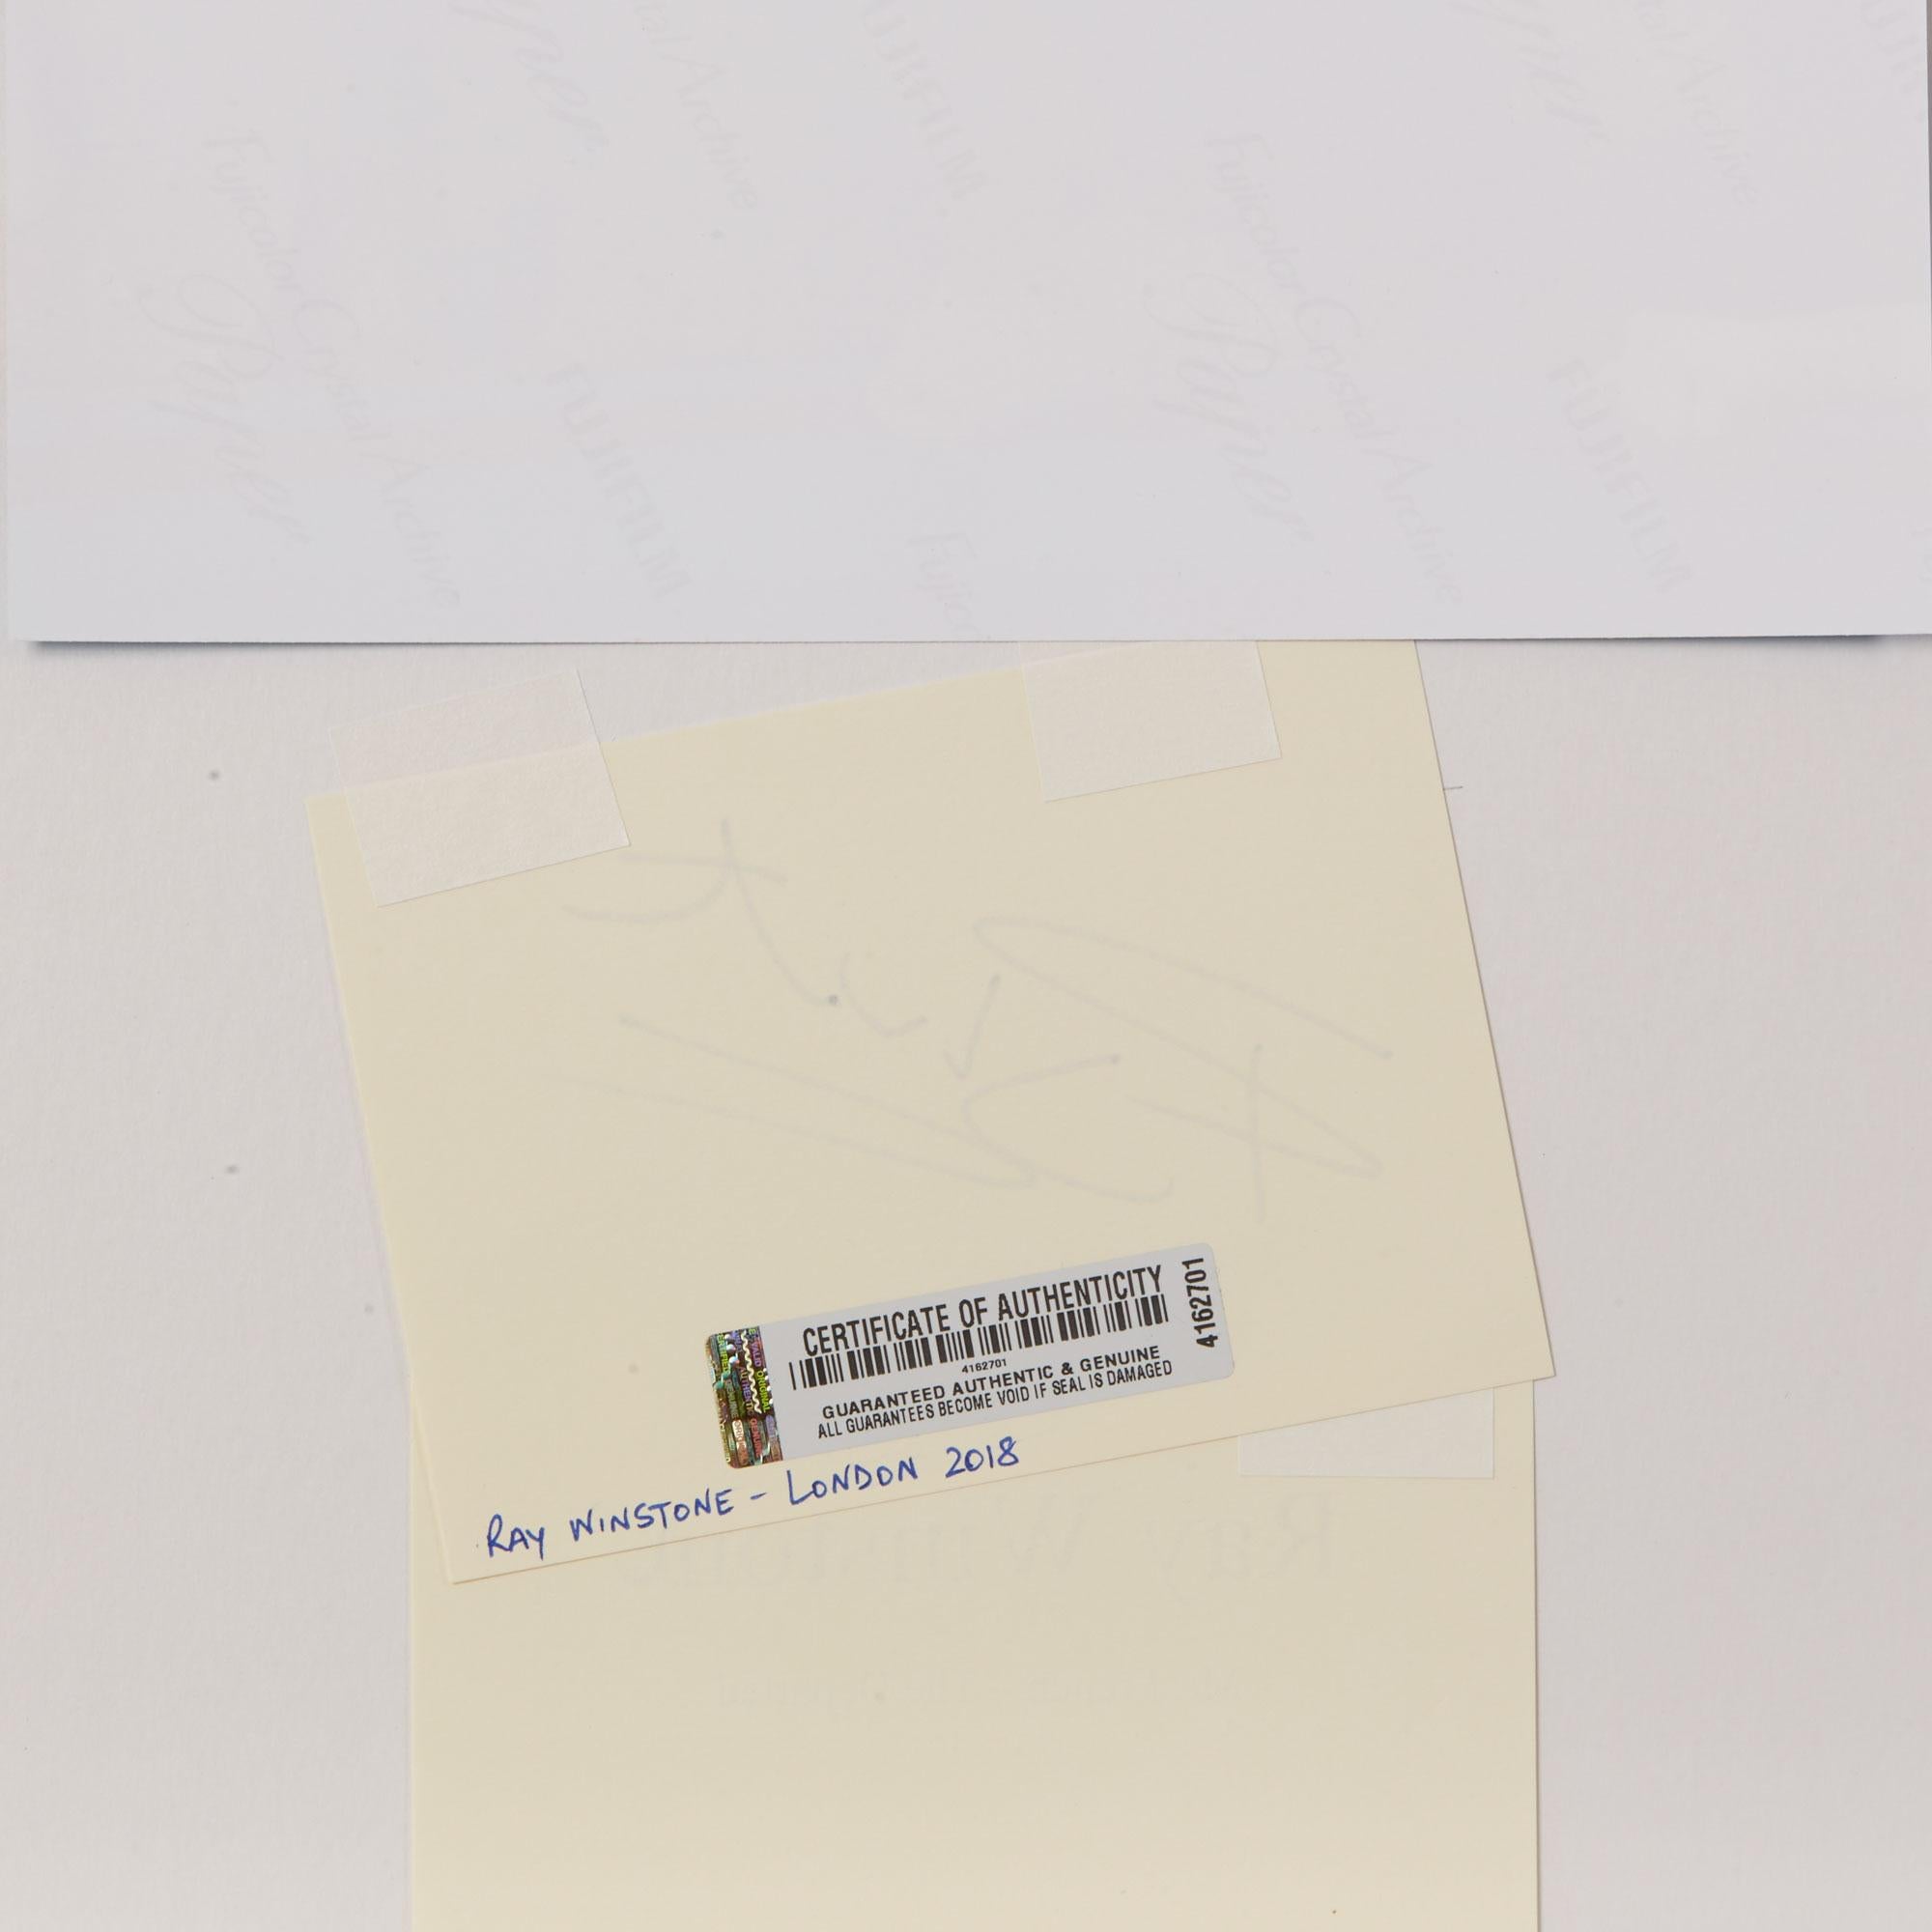 Eine einzigartige Sammlung Ray Winstone von 20 Original-Autogramm montiert Montage mit Porträtfotos und Filmstills mit Elfenbein-Karte in schwarzer Tinte mit einem Ray Winstone Autogramm unterzeichnet jeweils mit einem 